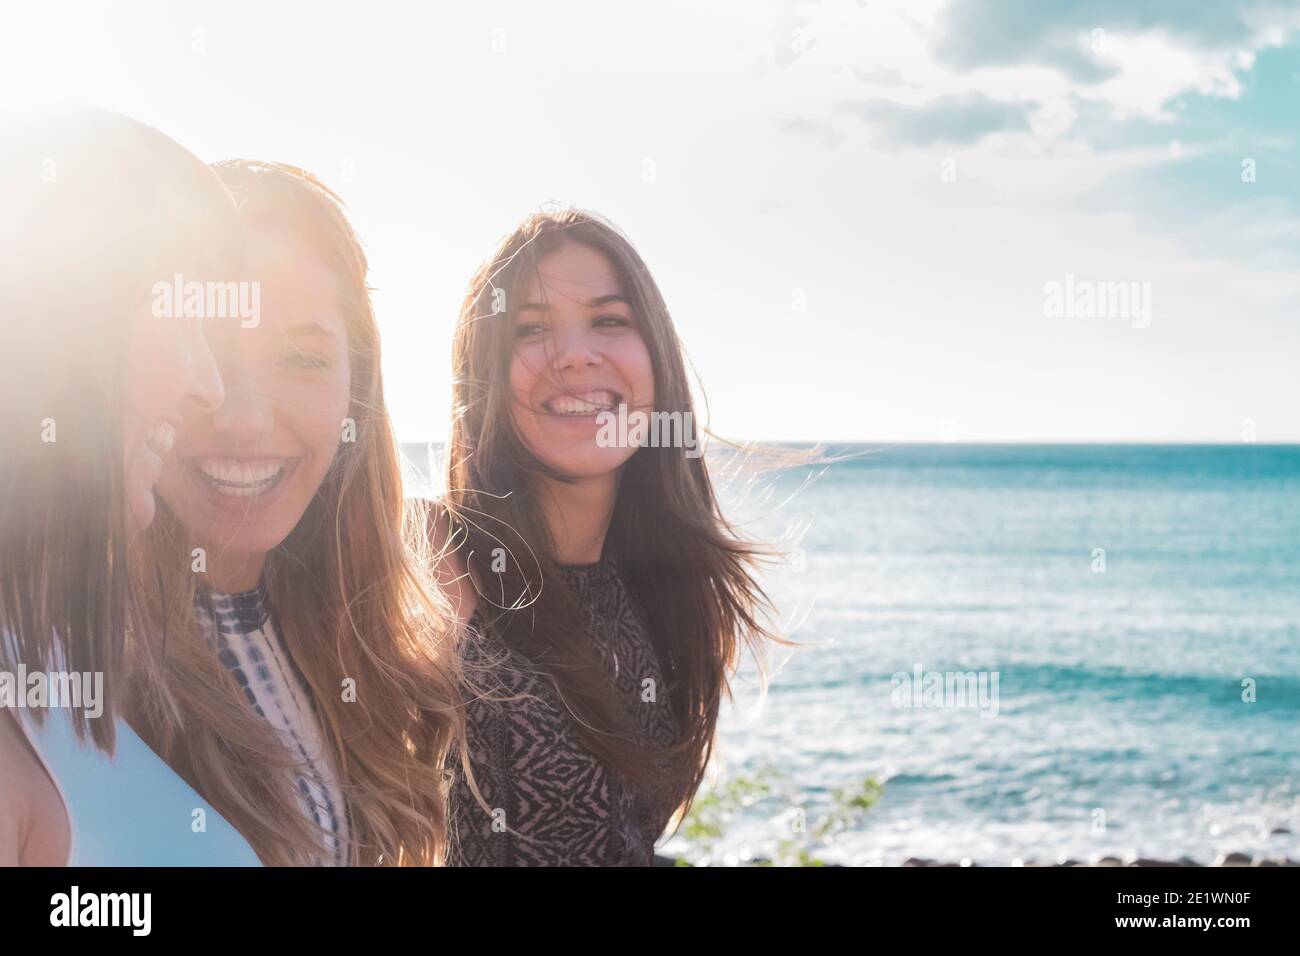 Portrait der Gruppe von jungen Mädchen Freunde lachen und lächeln Gemeinsam Spaß bei Freizeitaktivitäten im Freien mit blauem Meer haben Und Himmel im Hintergrund - glücklich y Stockfoto